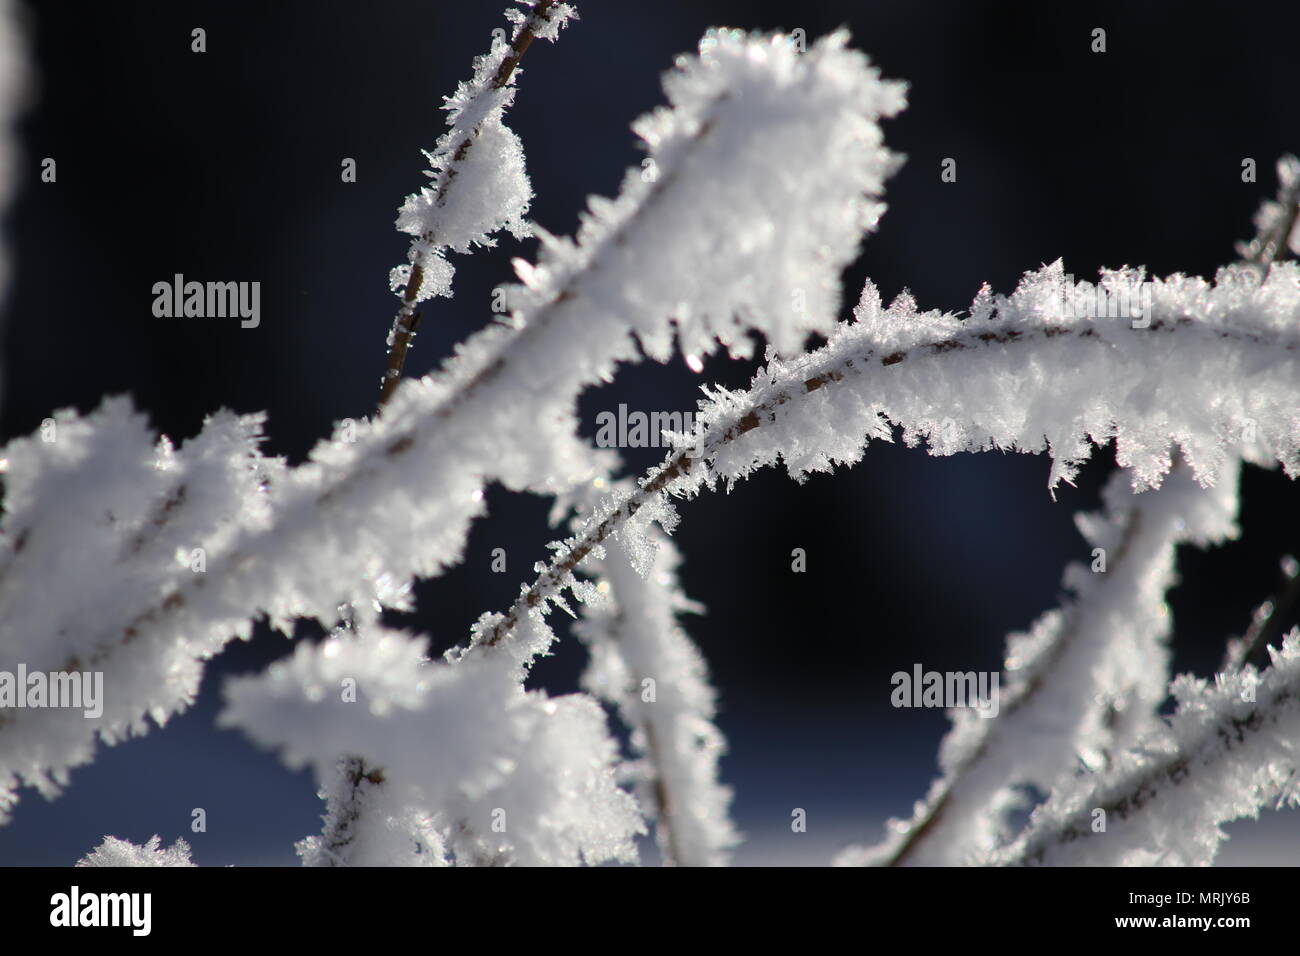 Flocons sur arbre, paysage d'hiver Banque D'Images